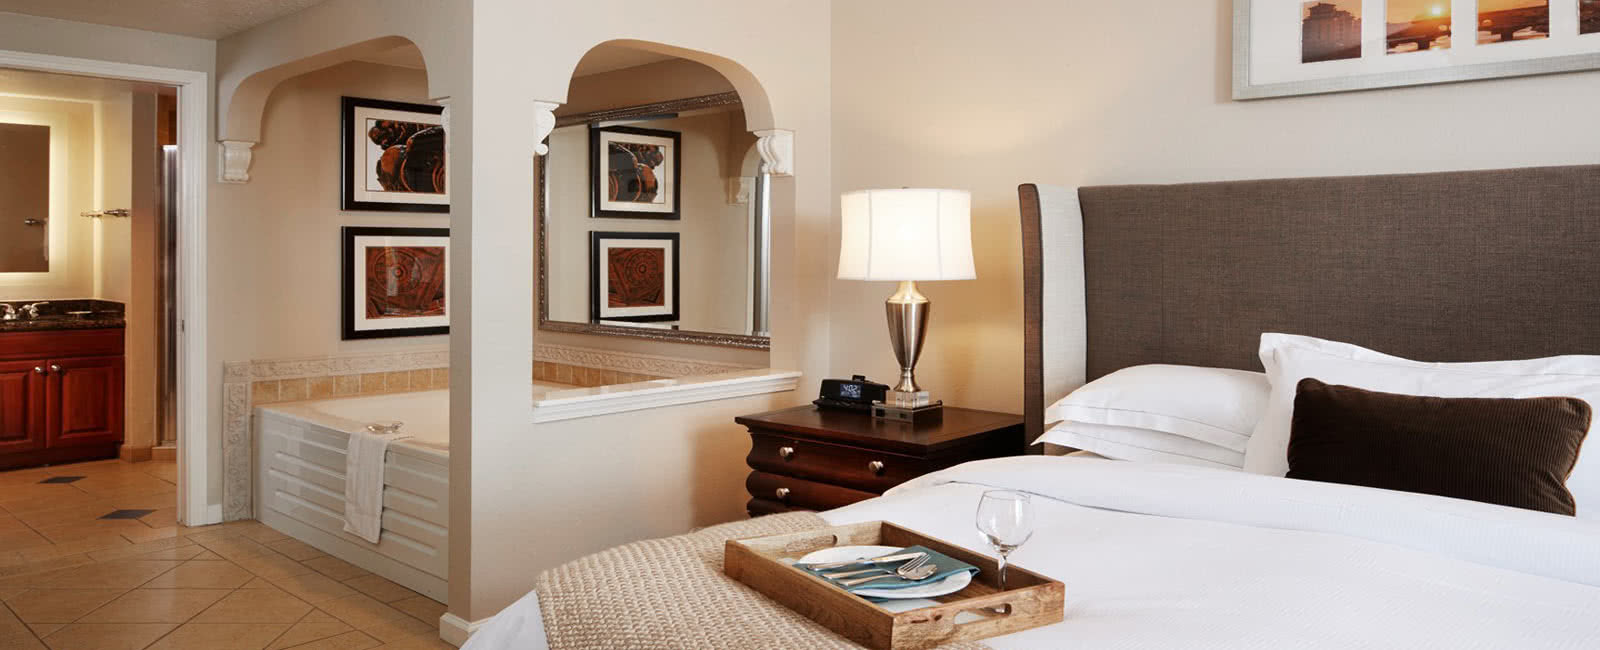 Bedroom and Tub at Hilton Grand Vacations Club at Tuscany Village in Orlando, Florida